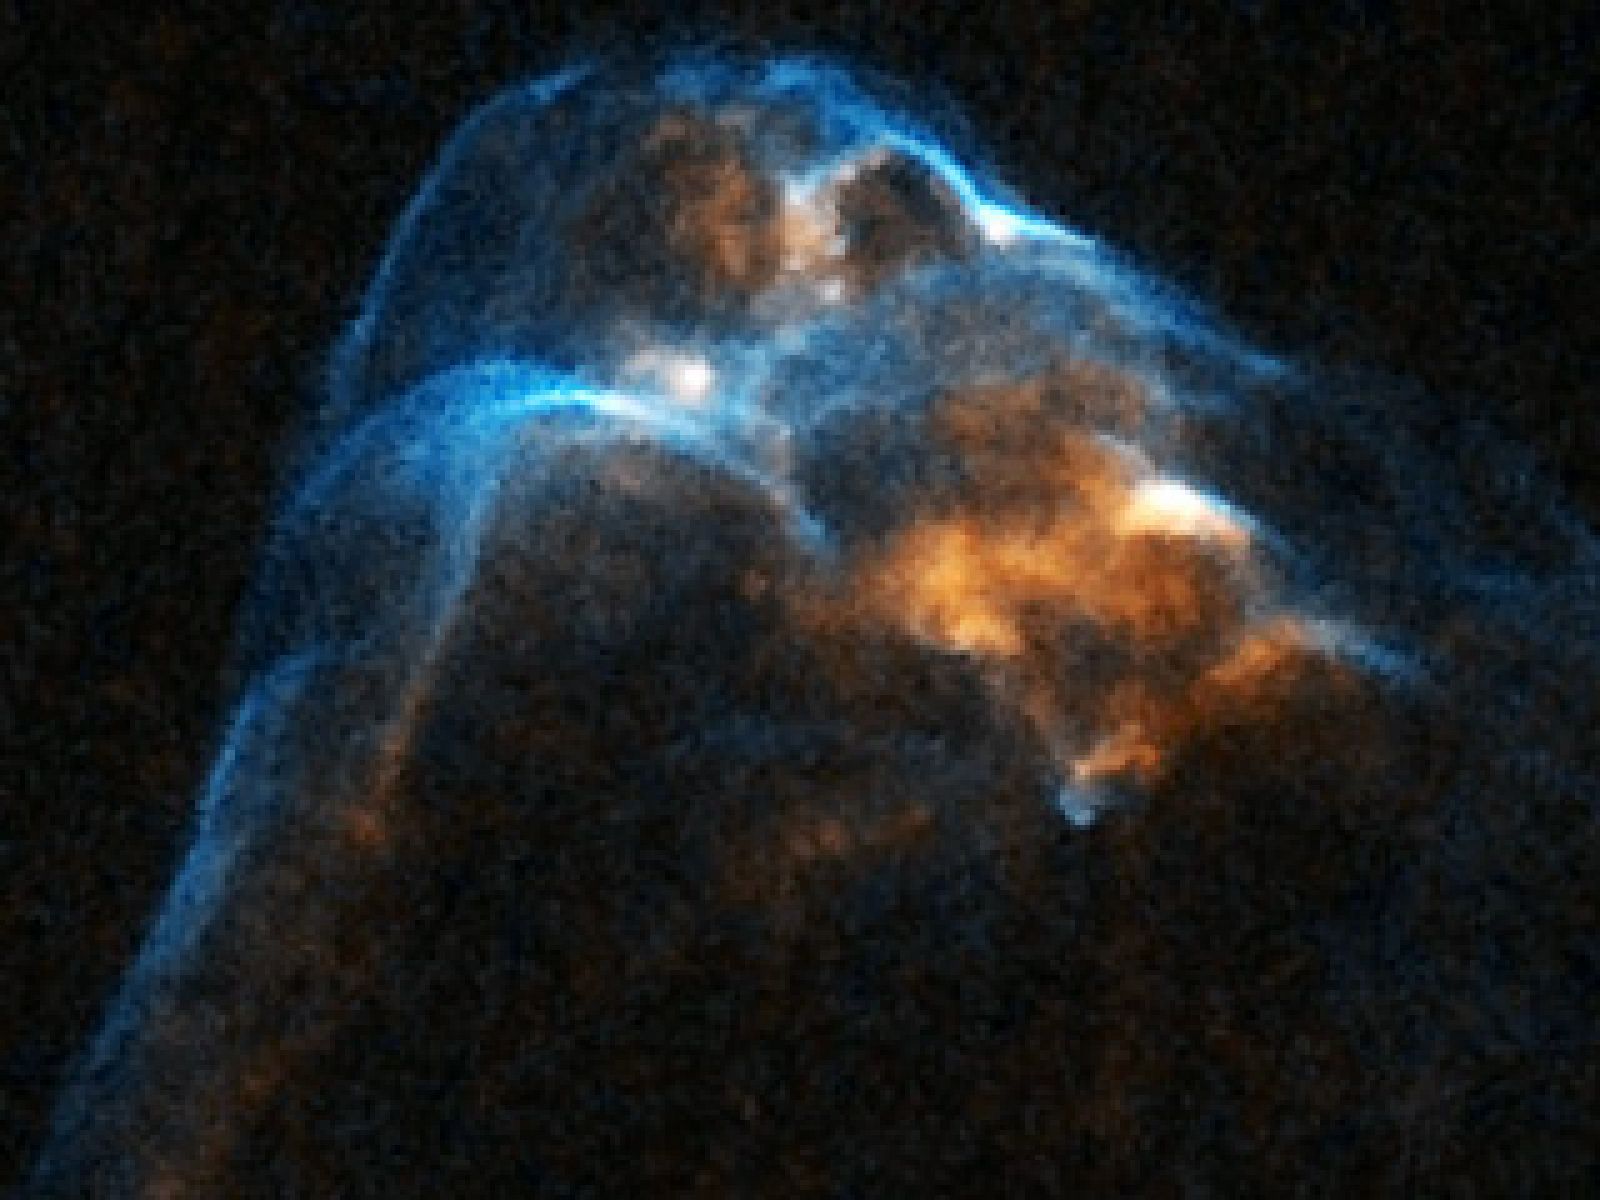 Un vídeo con imágenes recogidas por el telescopio Hubble durante 14 años proporciona detalles sobre el proceso del nacimiento estelar